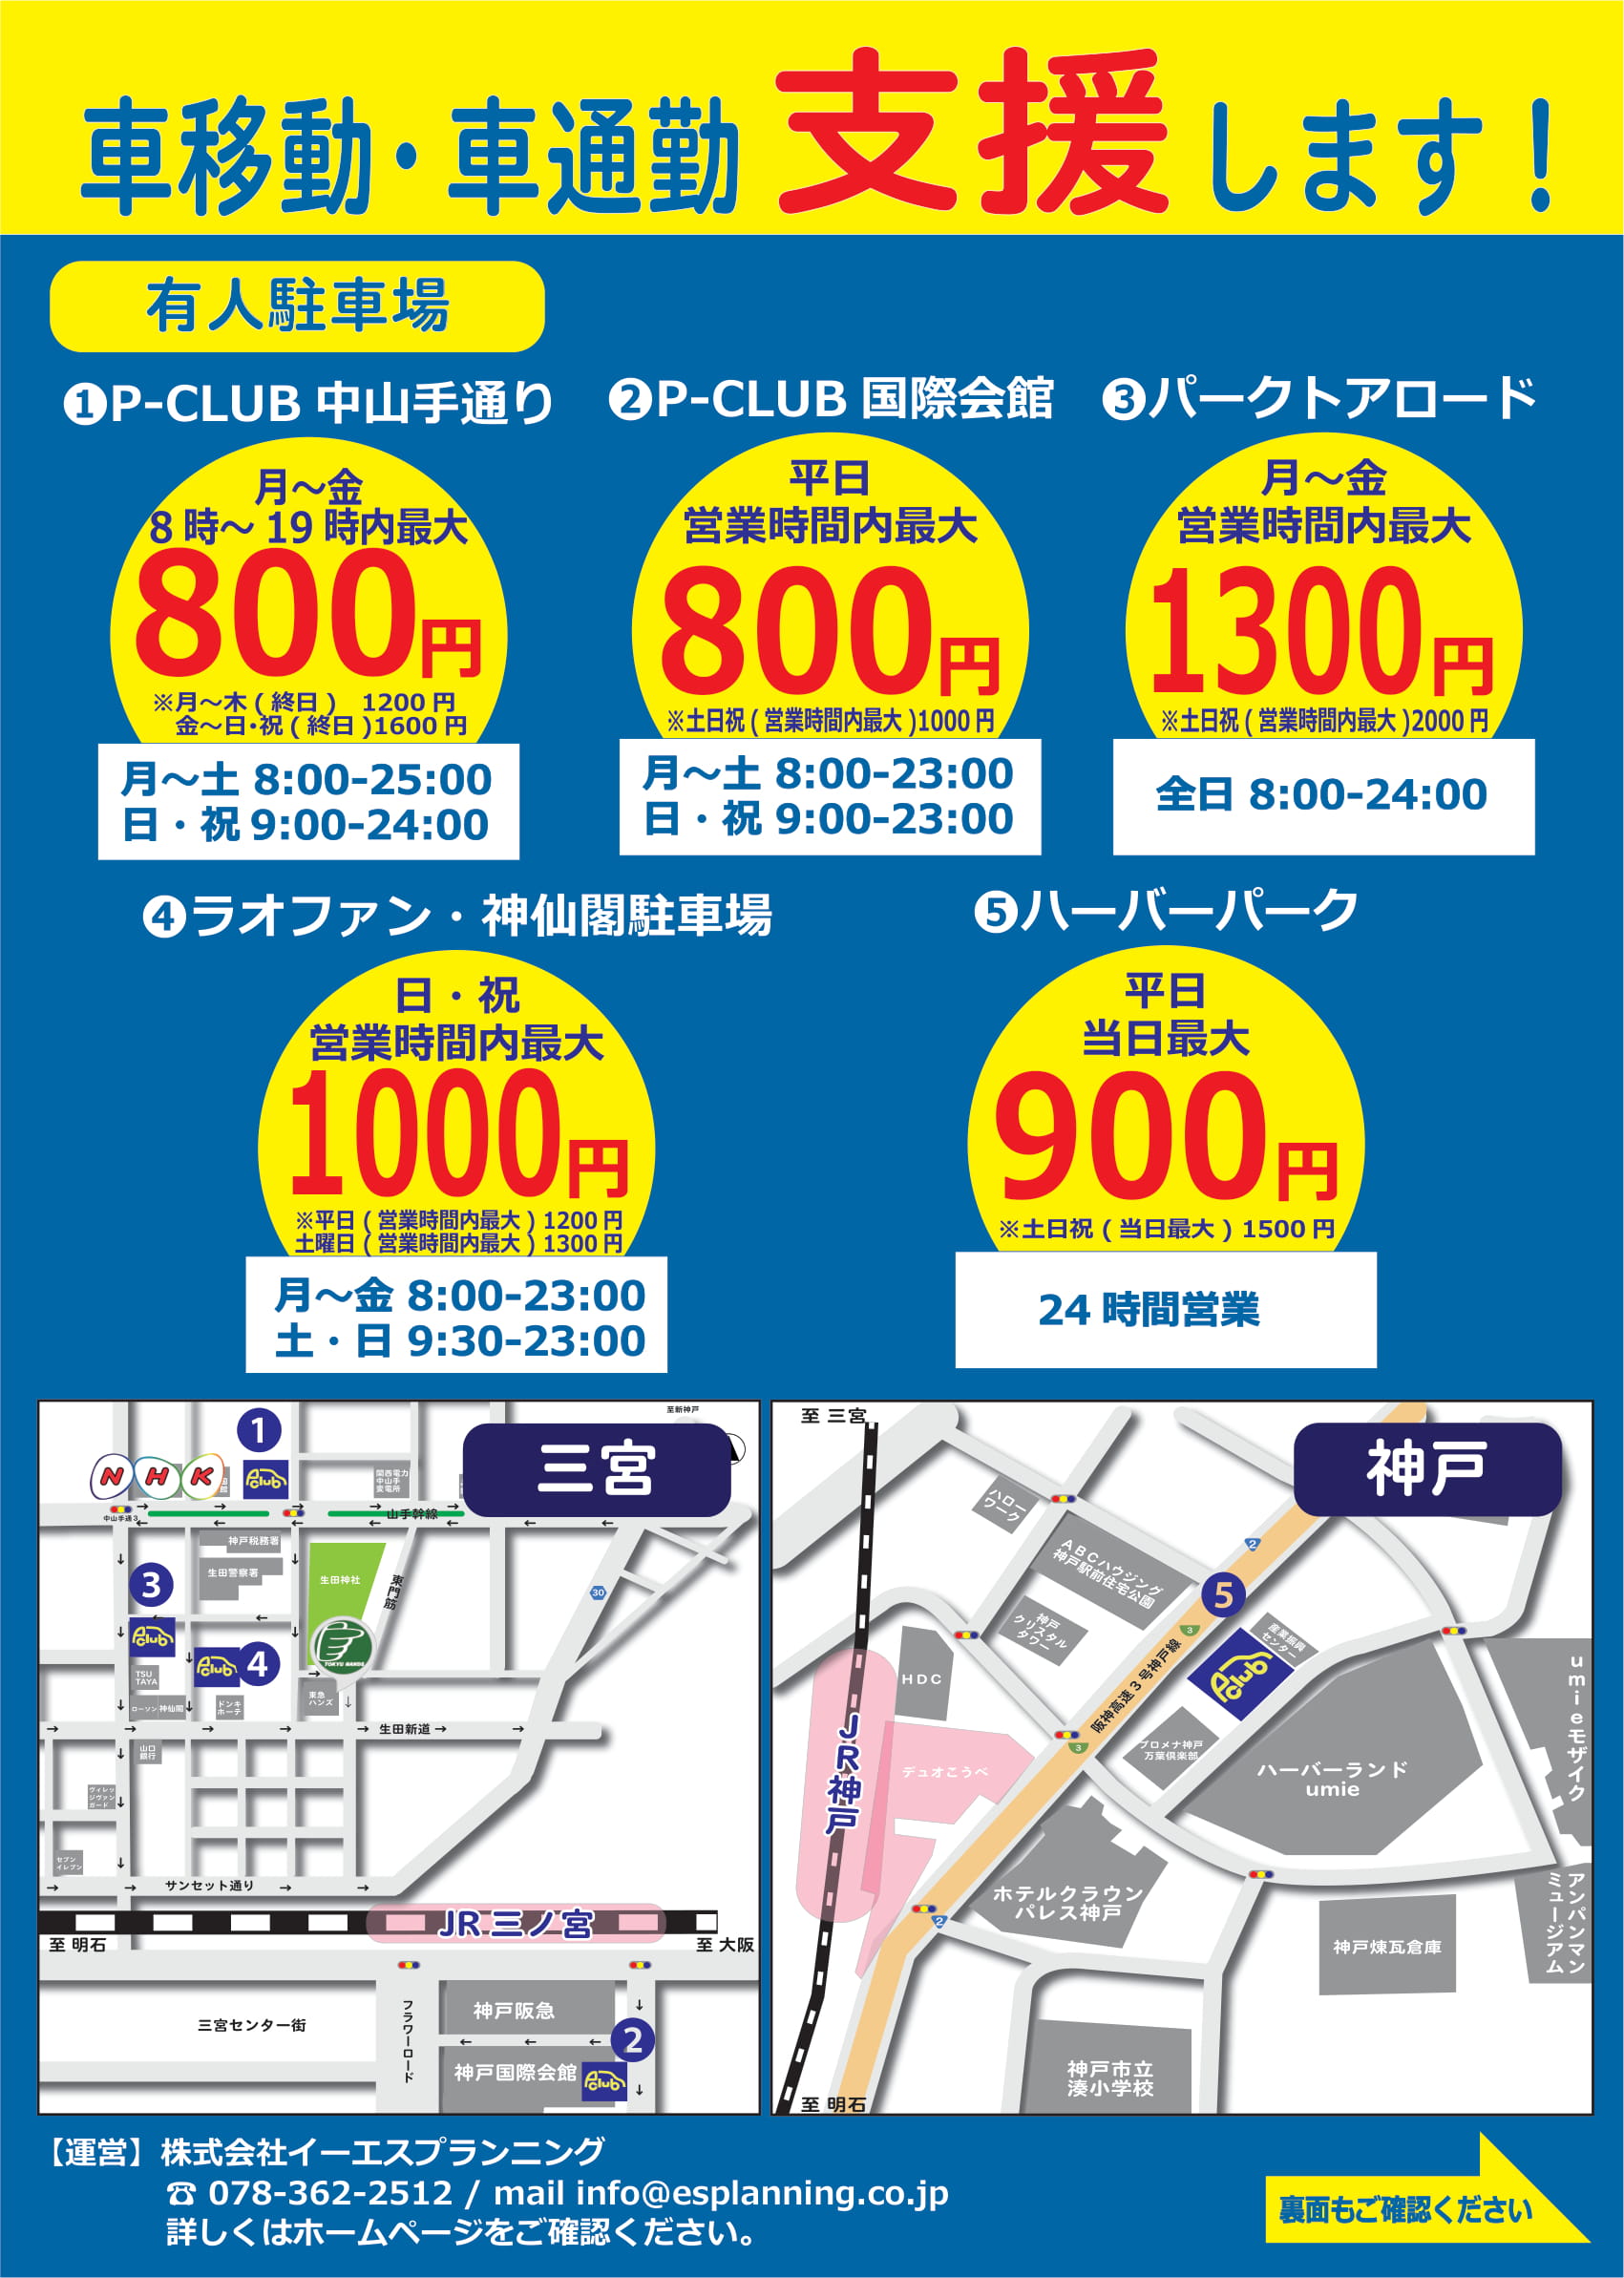 最大料金あり 神戸 三宮でお得な駐車場をご紹介 観光スポット近くで便利 神戸 大阪 姫路の駐車場 運営 経営相談なら イーエスプランニングへ